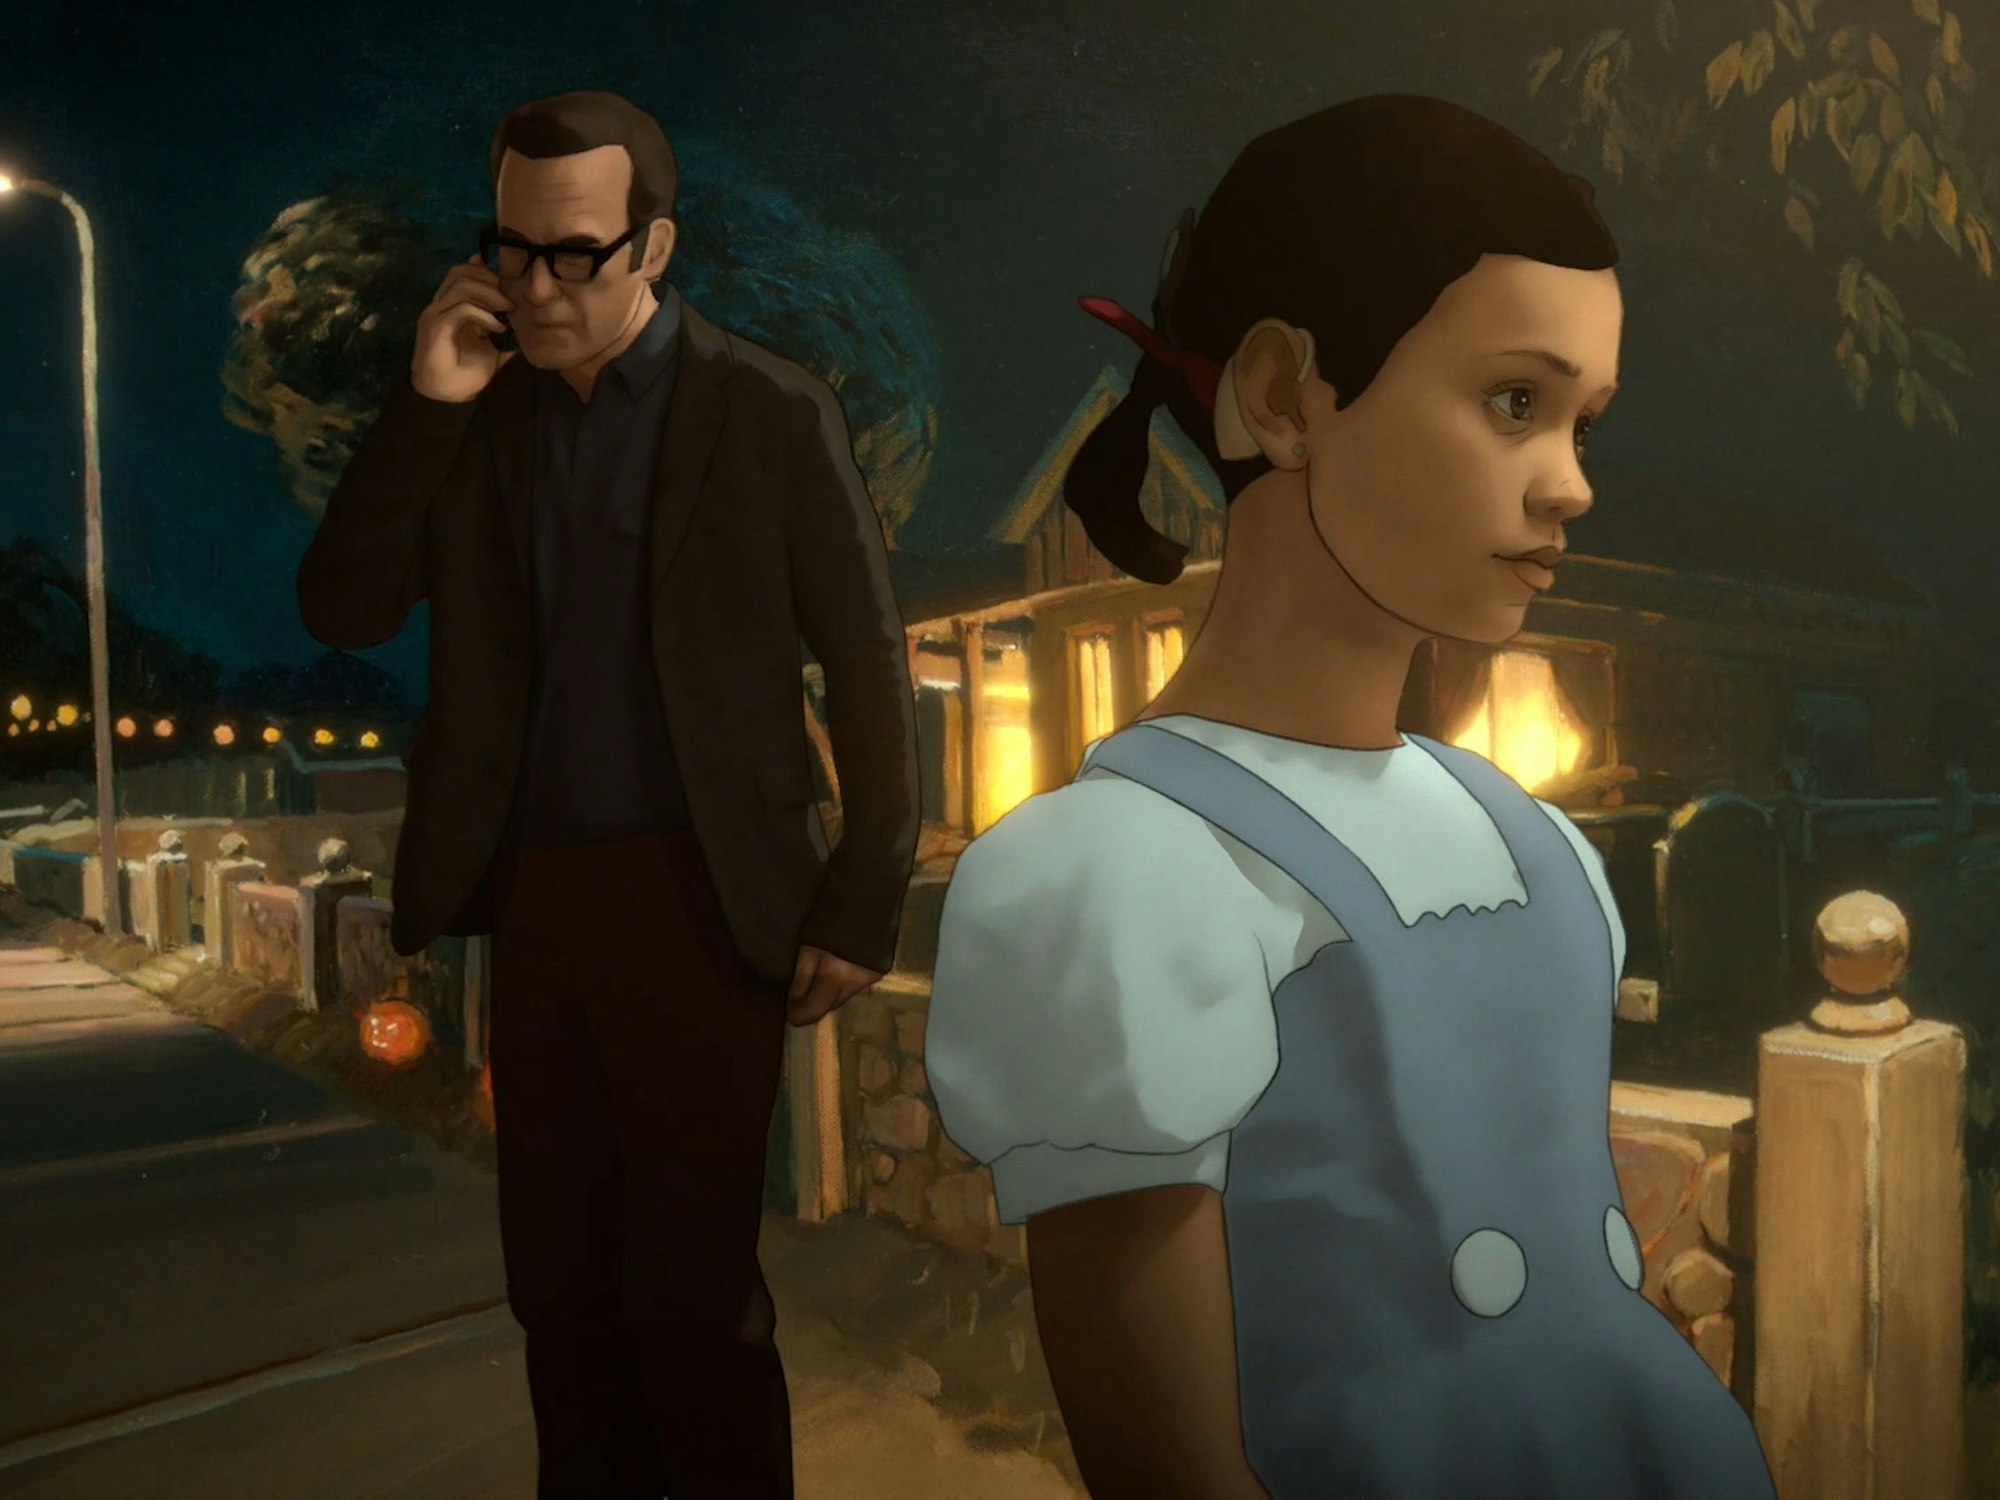 Alma und ihr Vater in einer Szene der Serie „Undone“.